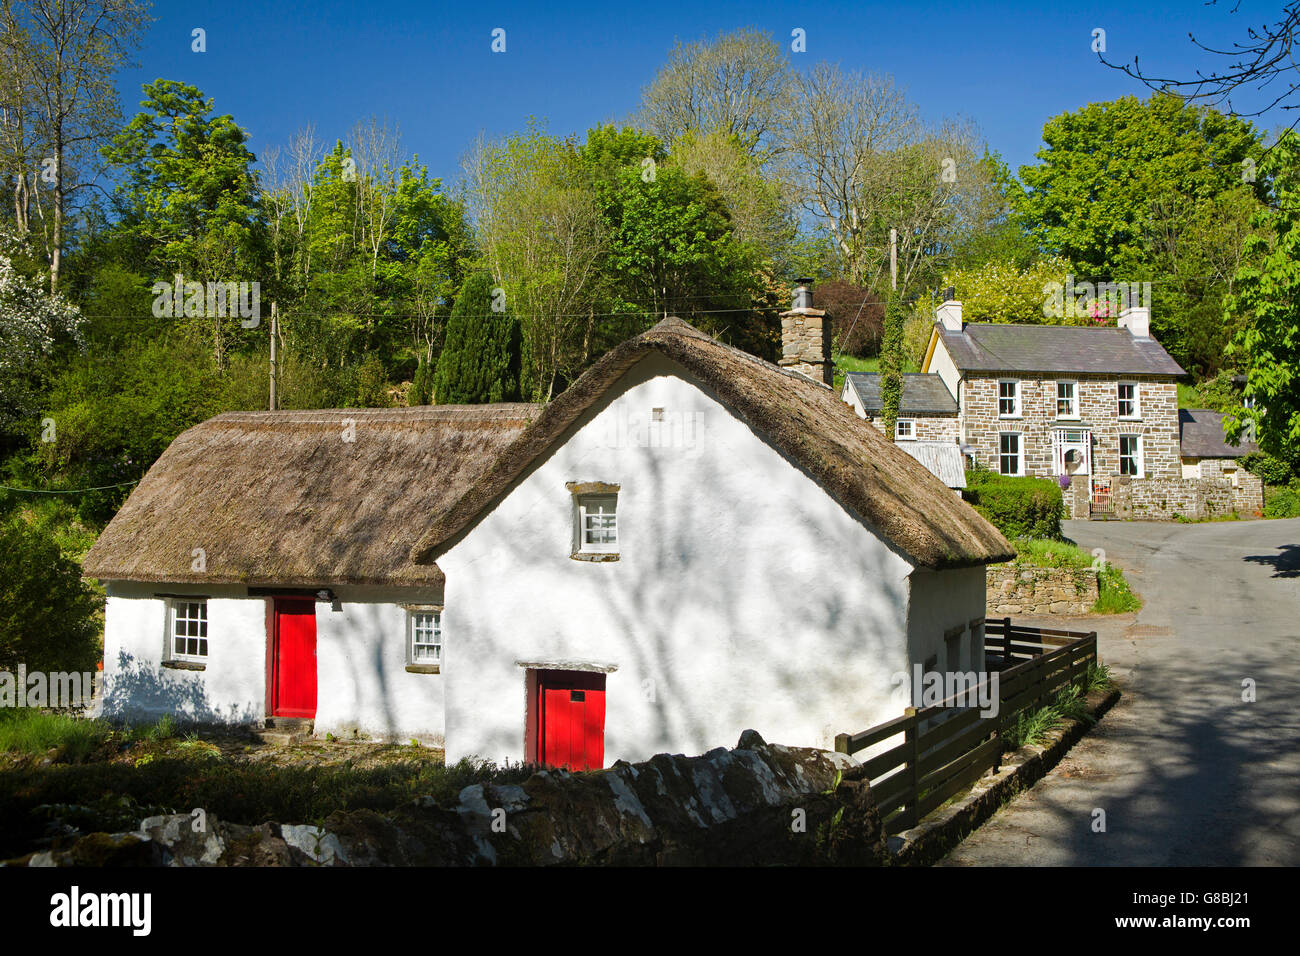 UK, Wales, Ceredigion, Penbontrhydyfothau, thatched cottage in small hamlet Stock Photo